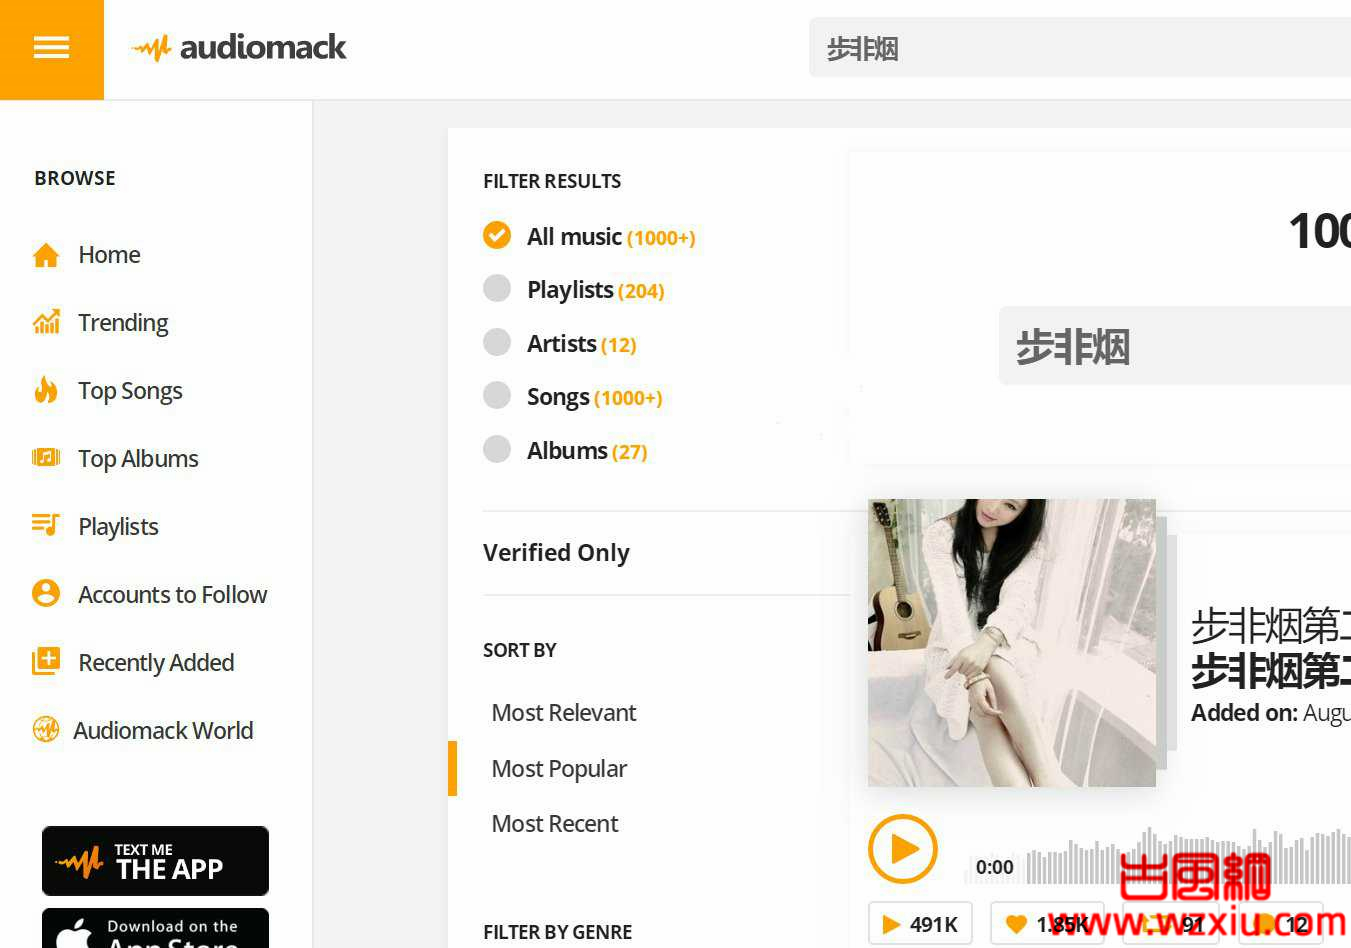 Audiomack国外音乐分享平台中文内容好像不太对劲！哈哈